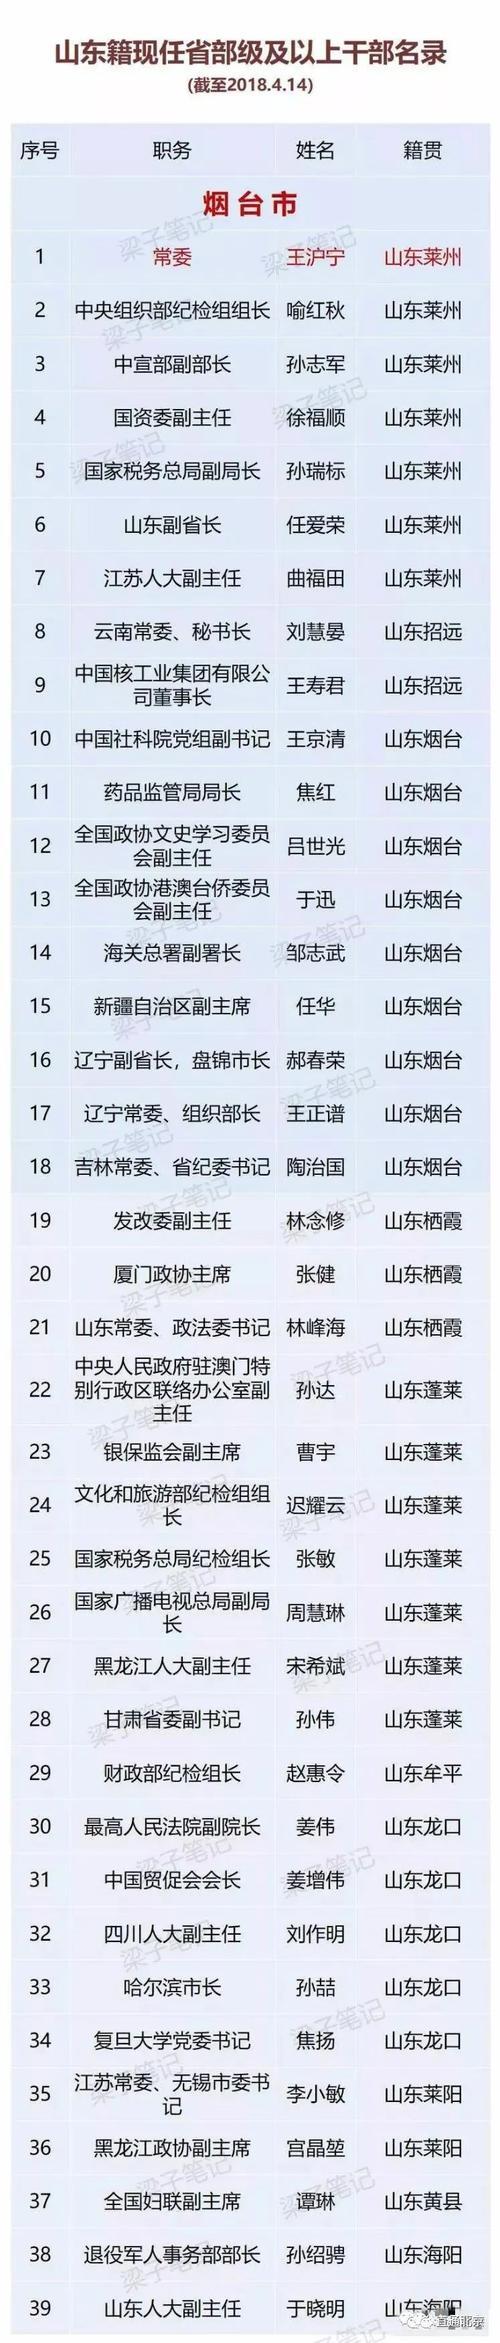 中国最年轻的部级干部排名_中央年龄最小的正部级